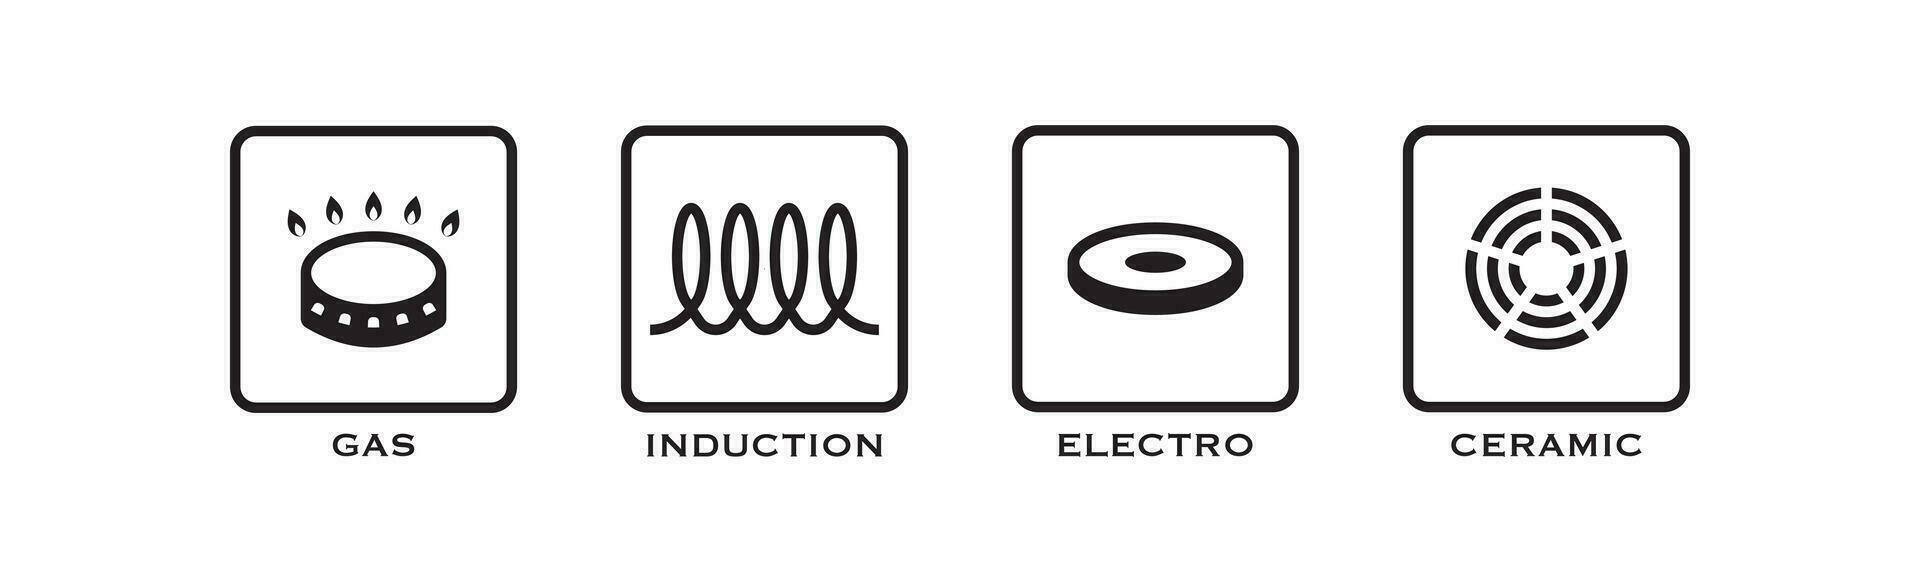 gas, inducción, electro, cerámico icono colocar. estufa ilustración símbolo. firmar estufac vector